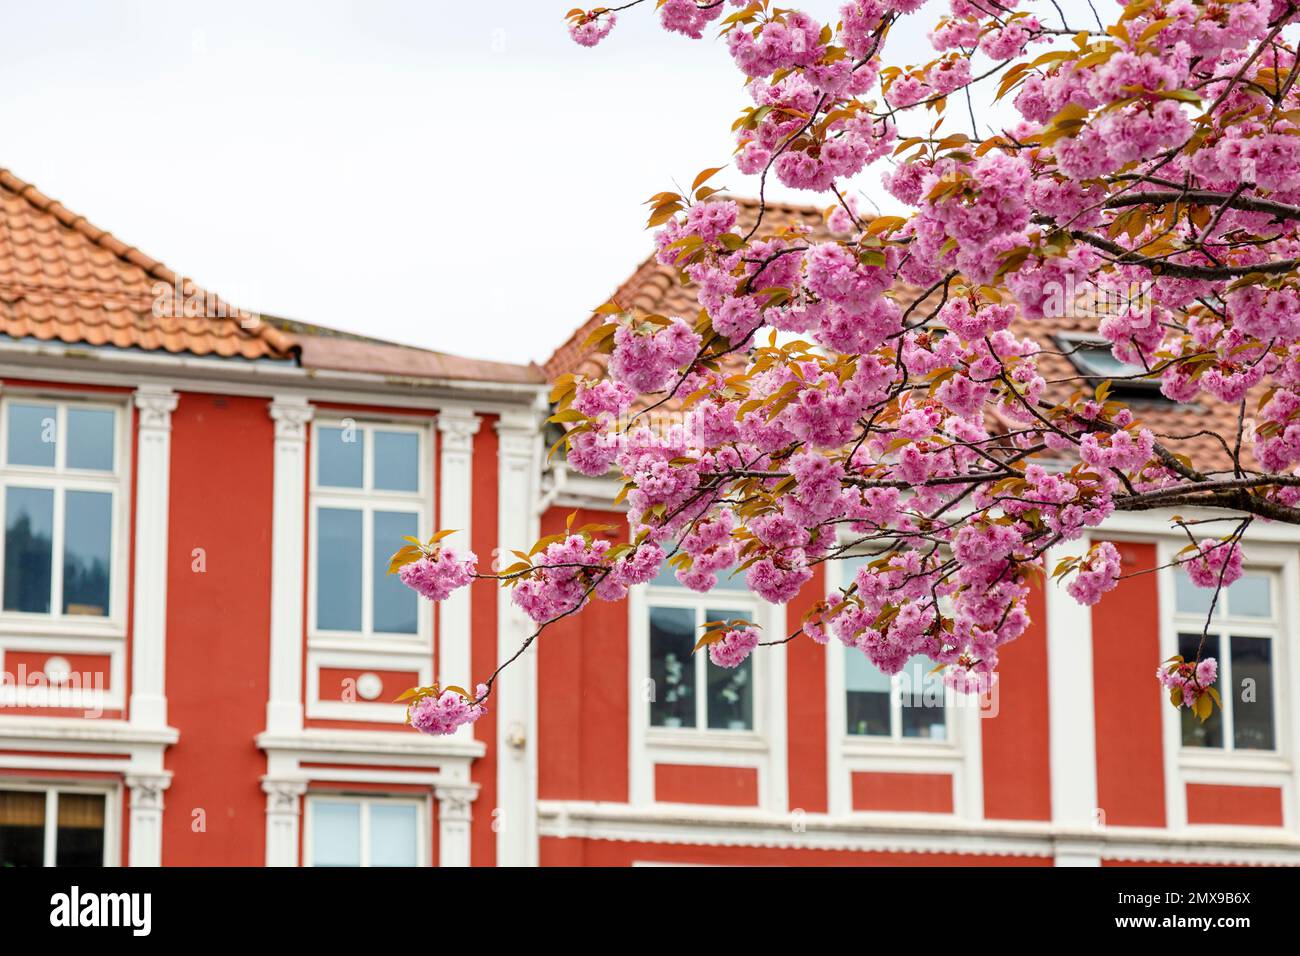 Fiori di ciliegio rosa contro le case rosse a Bergen, Norvegia Foto Stock